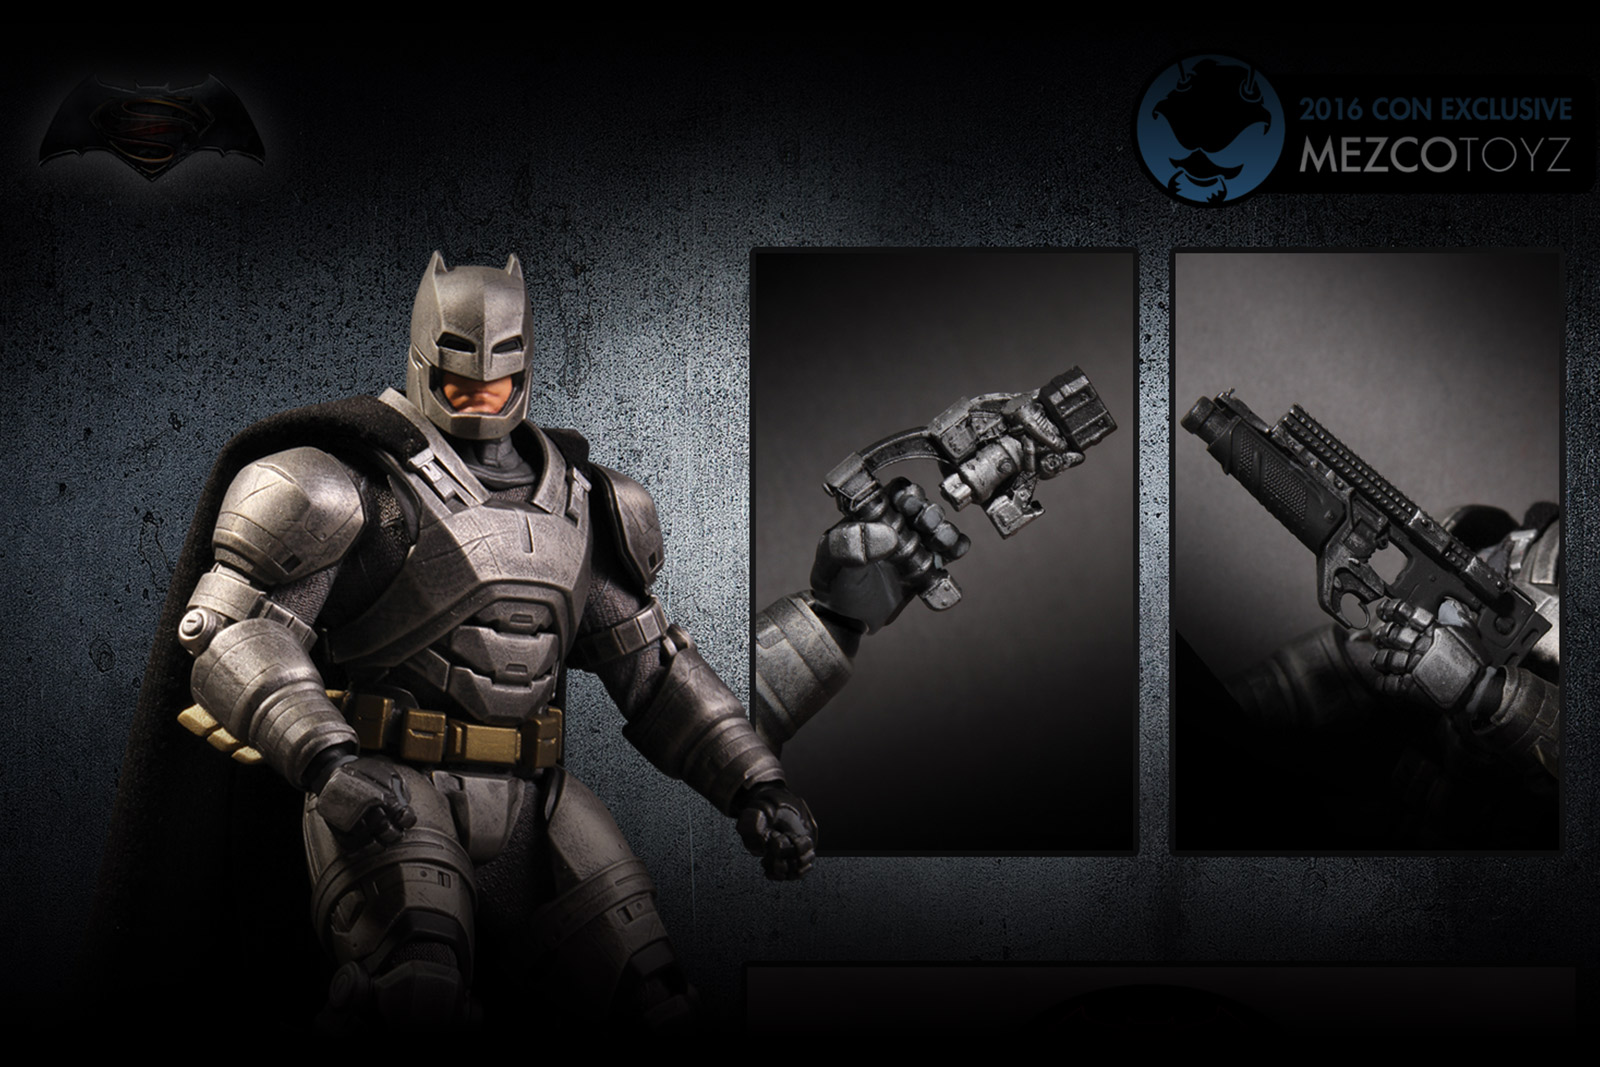 mezco armored batman